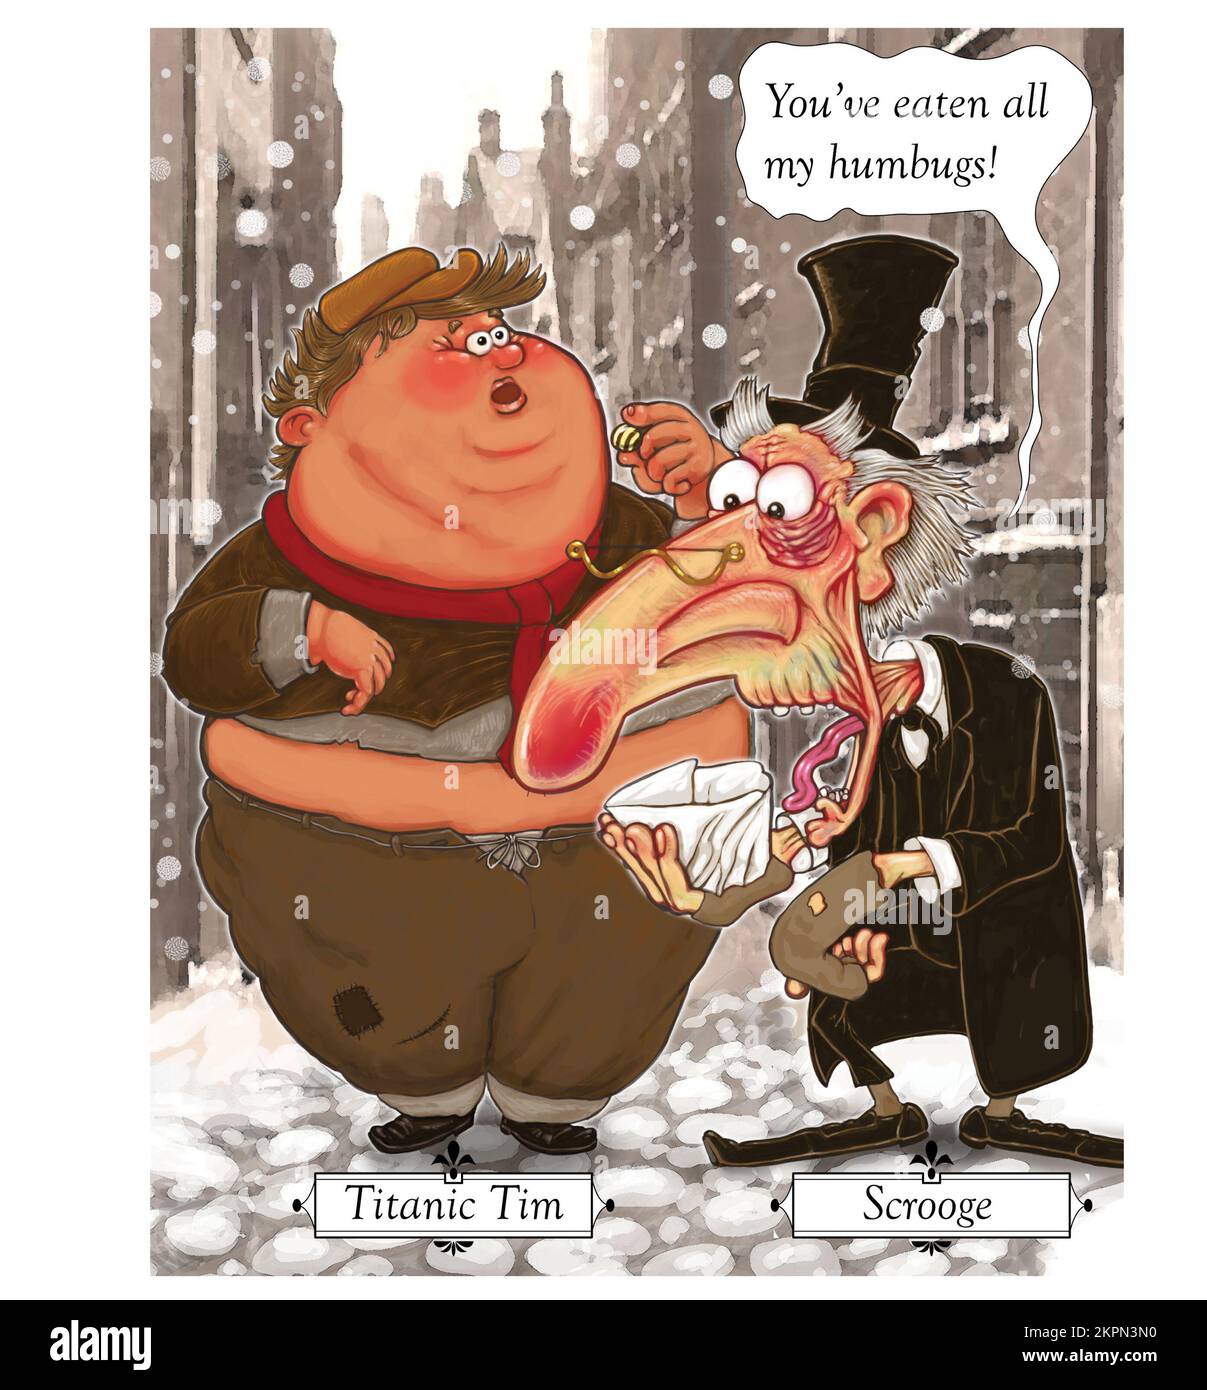 Lustige Weihnachtswitz-Kunst, Scrouge schaut auf seine Tüte voller Humbug und beschuldigt Titanic Tim, sie alle gegessen zu haben. Von Dickens inspirierte Weihnachtskarte Stockfoto